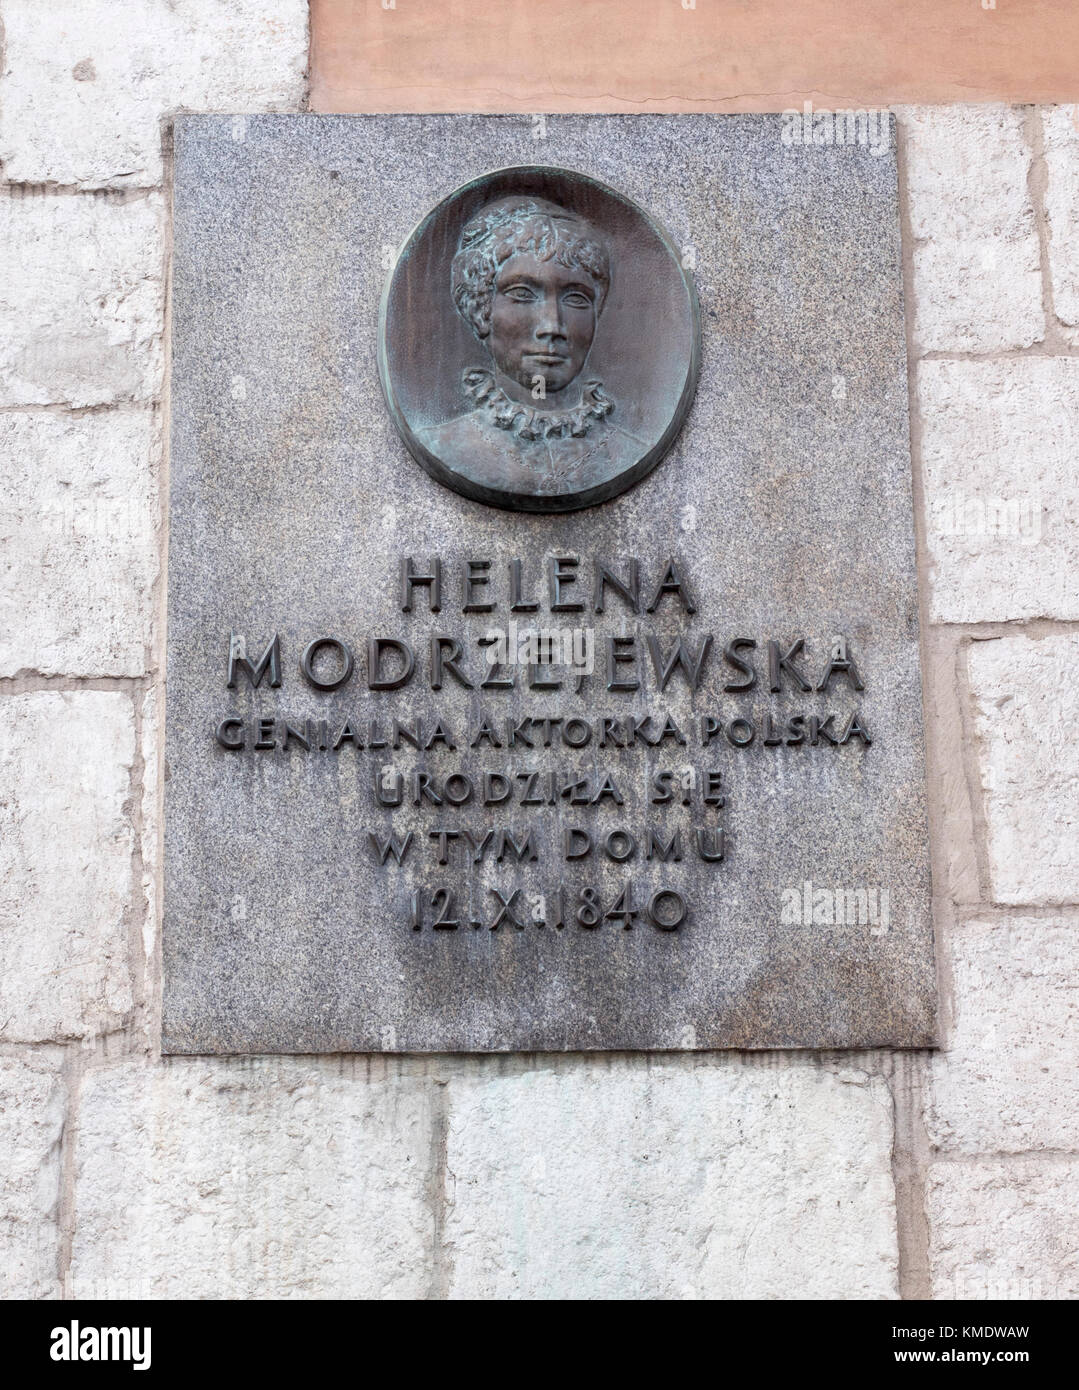 Plaque du patrimoine pour Helena Modrzejewska (nom vrai Jadwiga Helena Misel-Chlapowska) la plus grande actrice polonaise, à ul.Grodzka22, Cracovie, Pologne, Europe, Banque D'Images